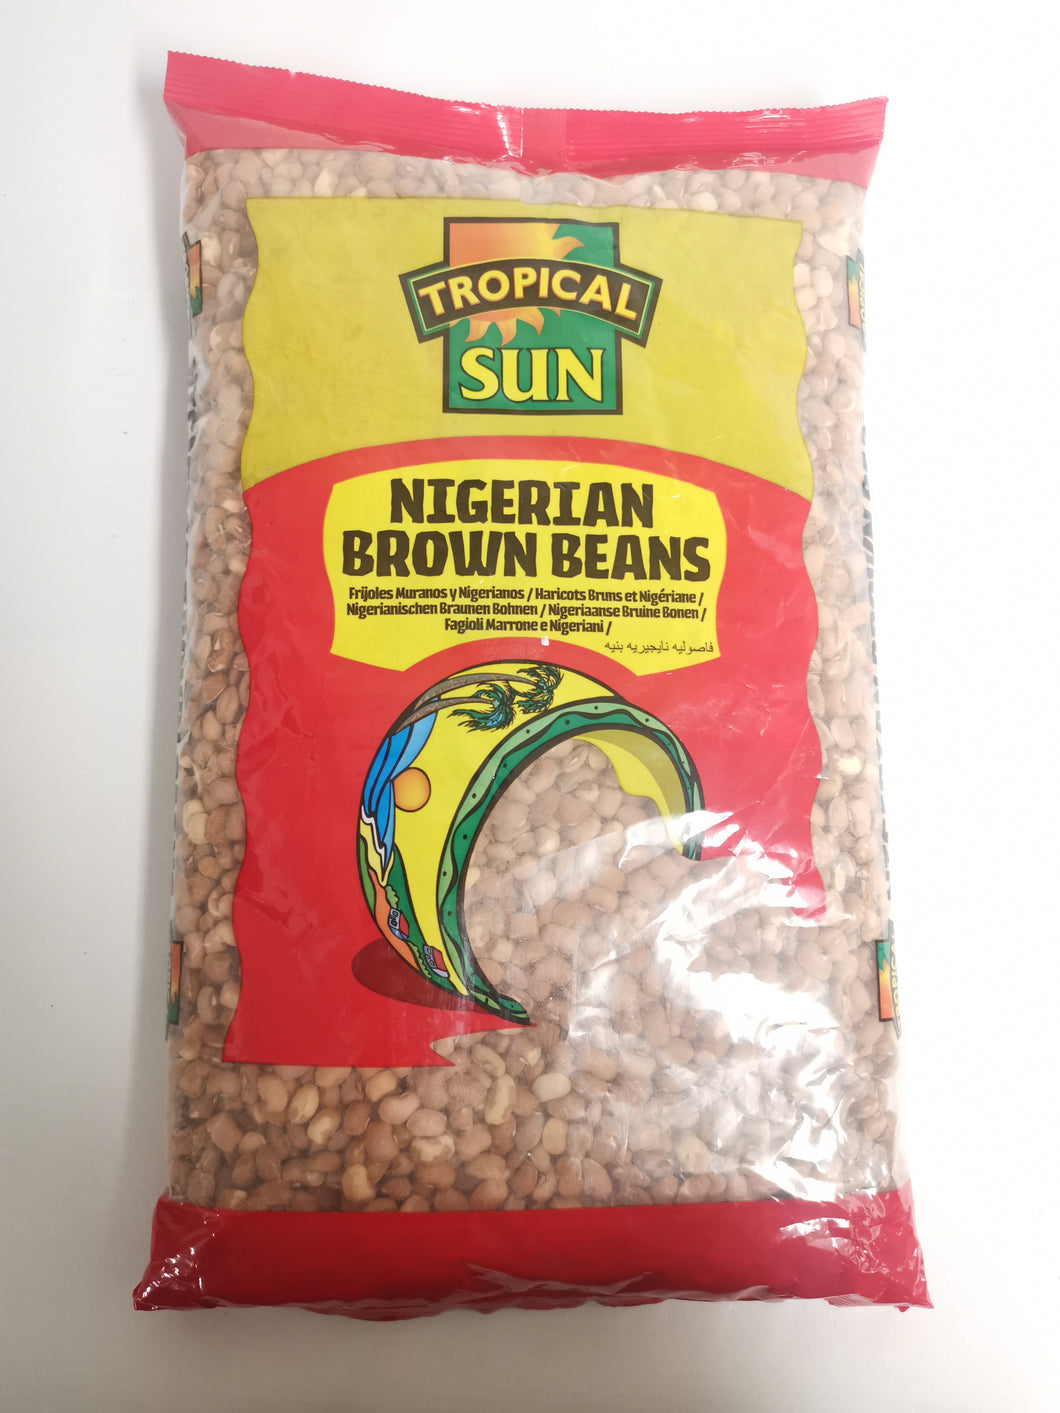 Tropical Sun Nigerian Brown Beans